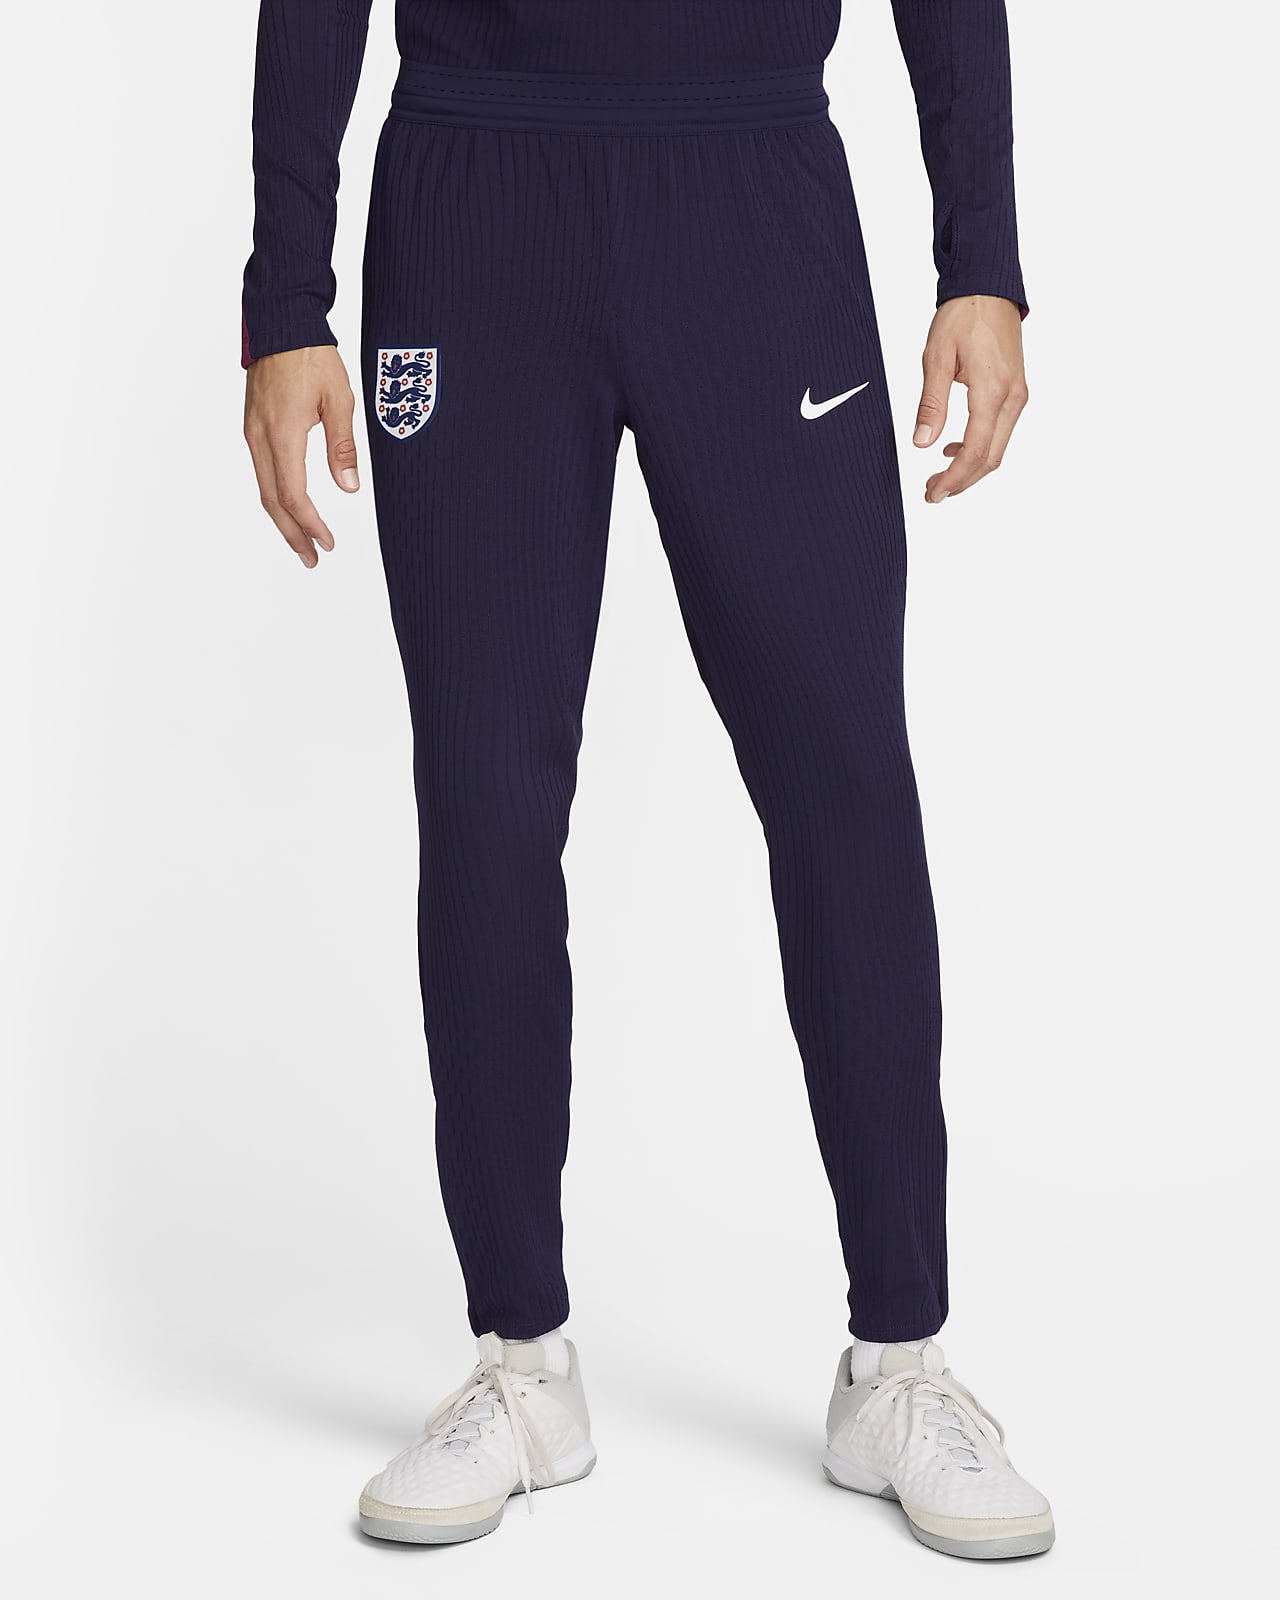 Engeland Strike Elite Nike Dri-FIT ADV knit voetbalbroek voor heren